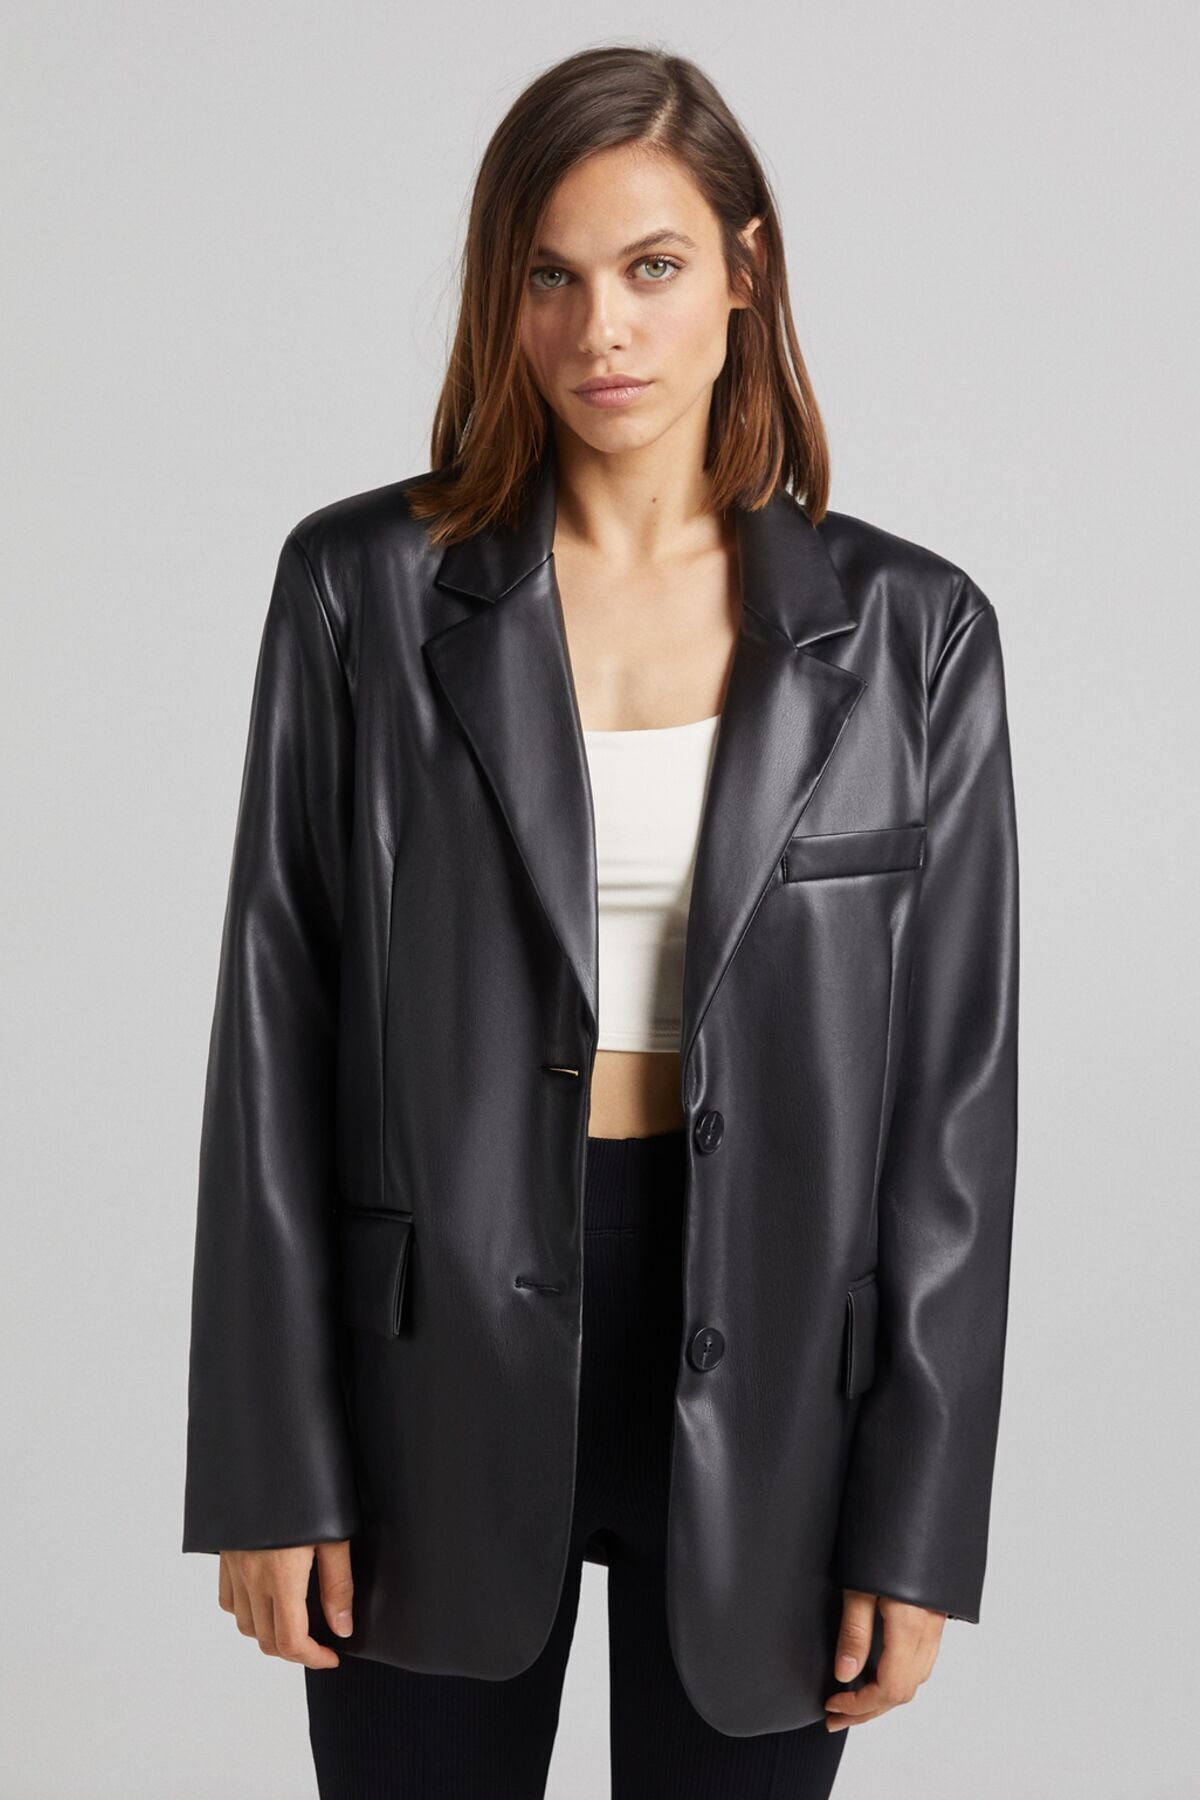 Bershka Blazer Ceket Kadın Suni Deri Siyah Fiyatı, Yorumları - Trendyol